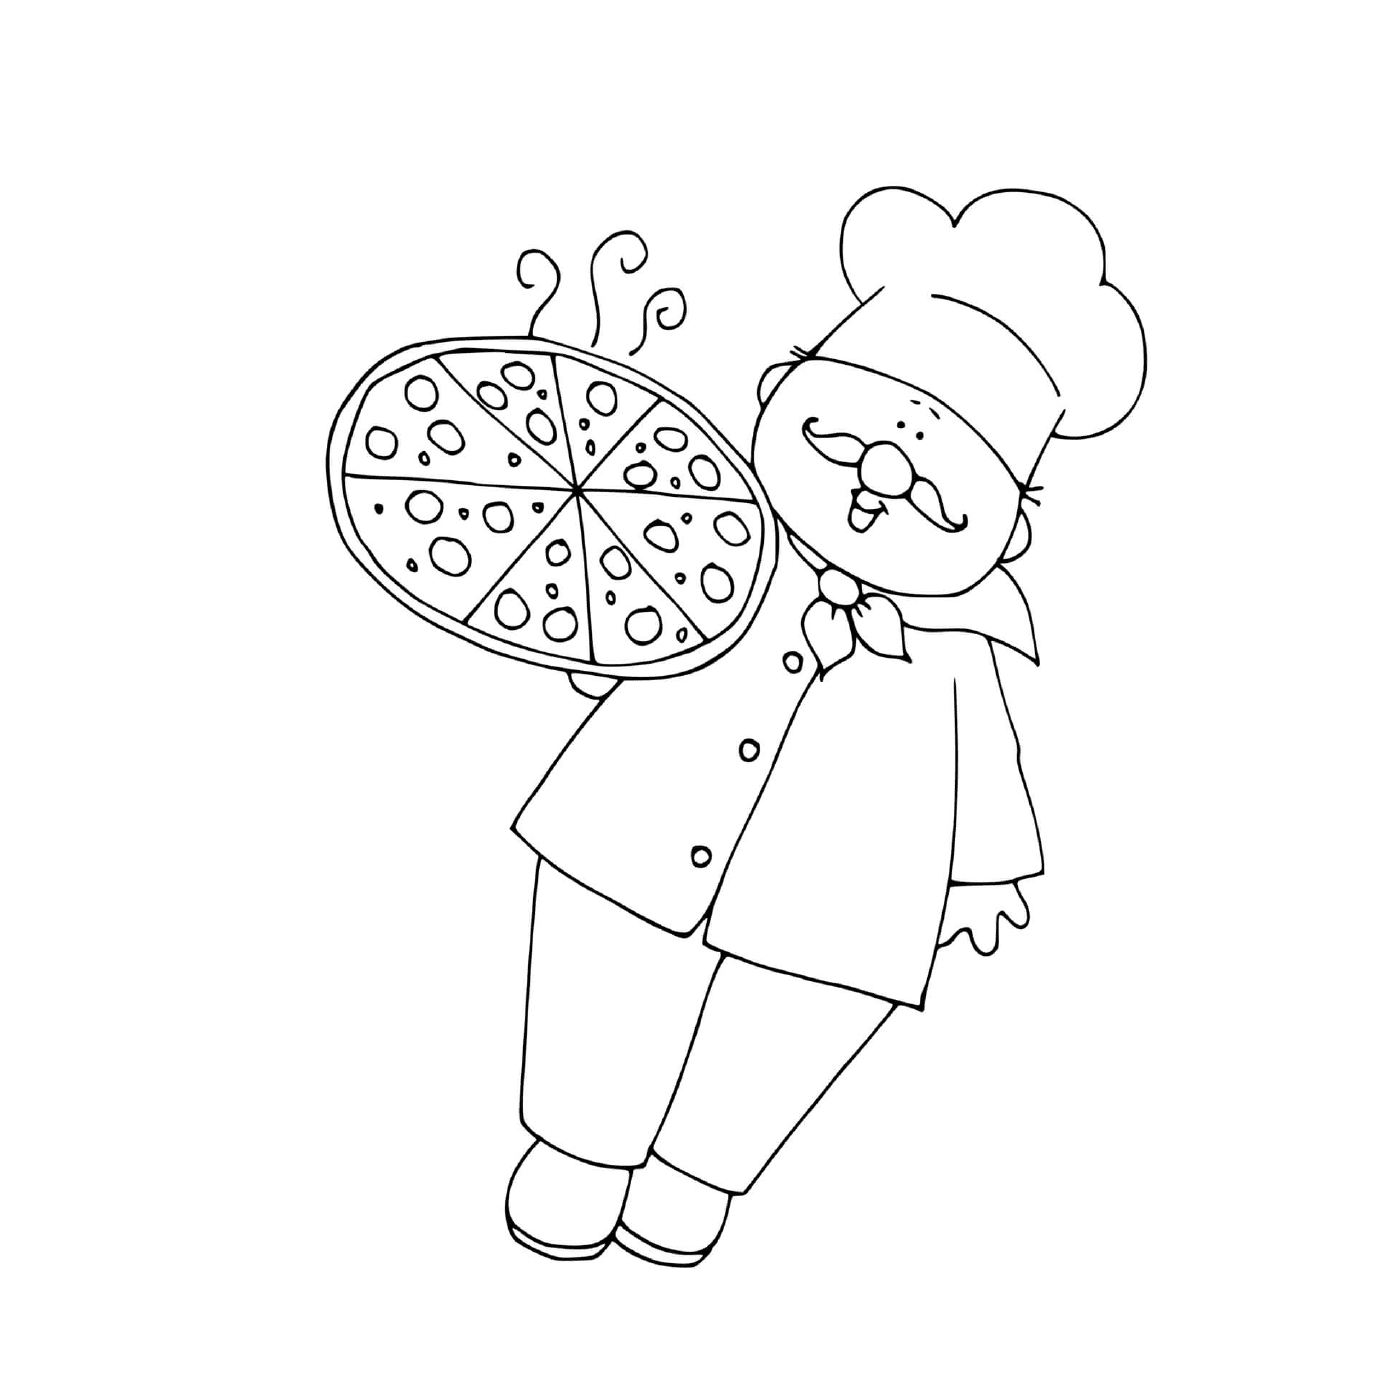   Un chef de cuisine de pizza 